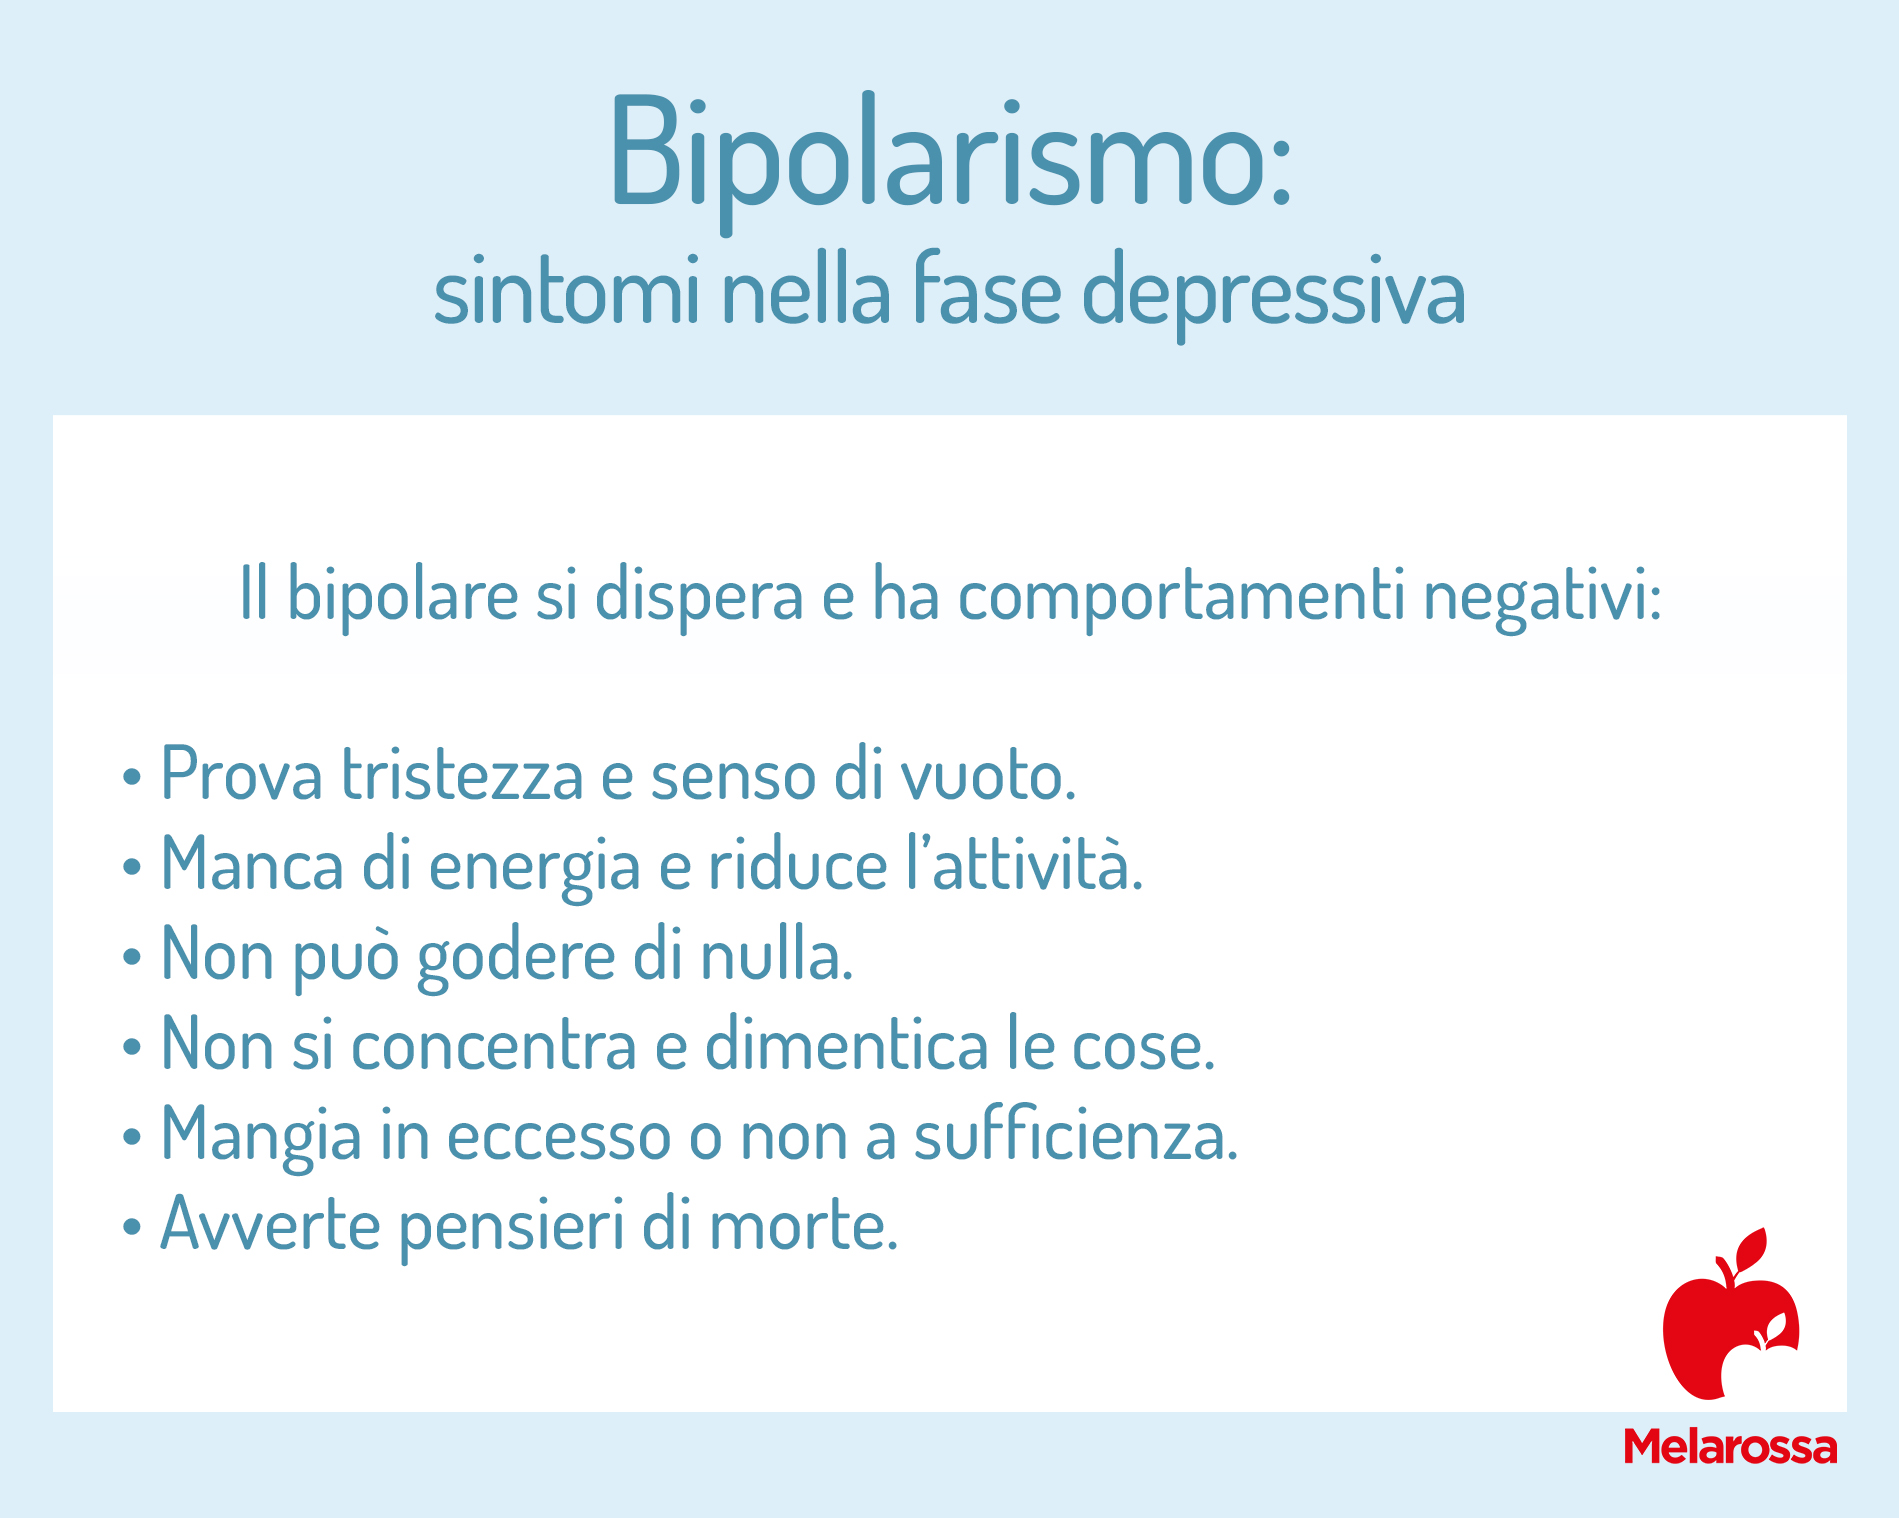 bipolarismo: sintomi nella fase depressiva 